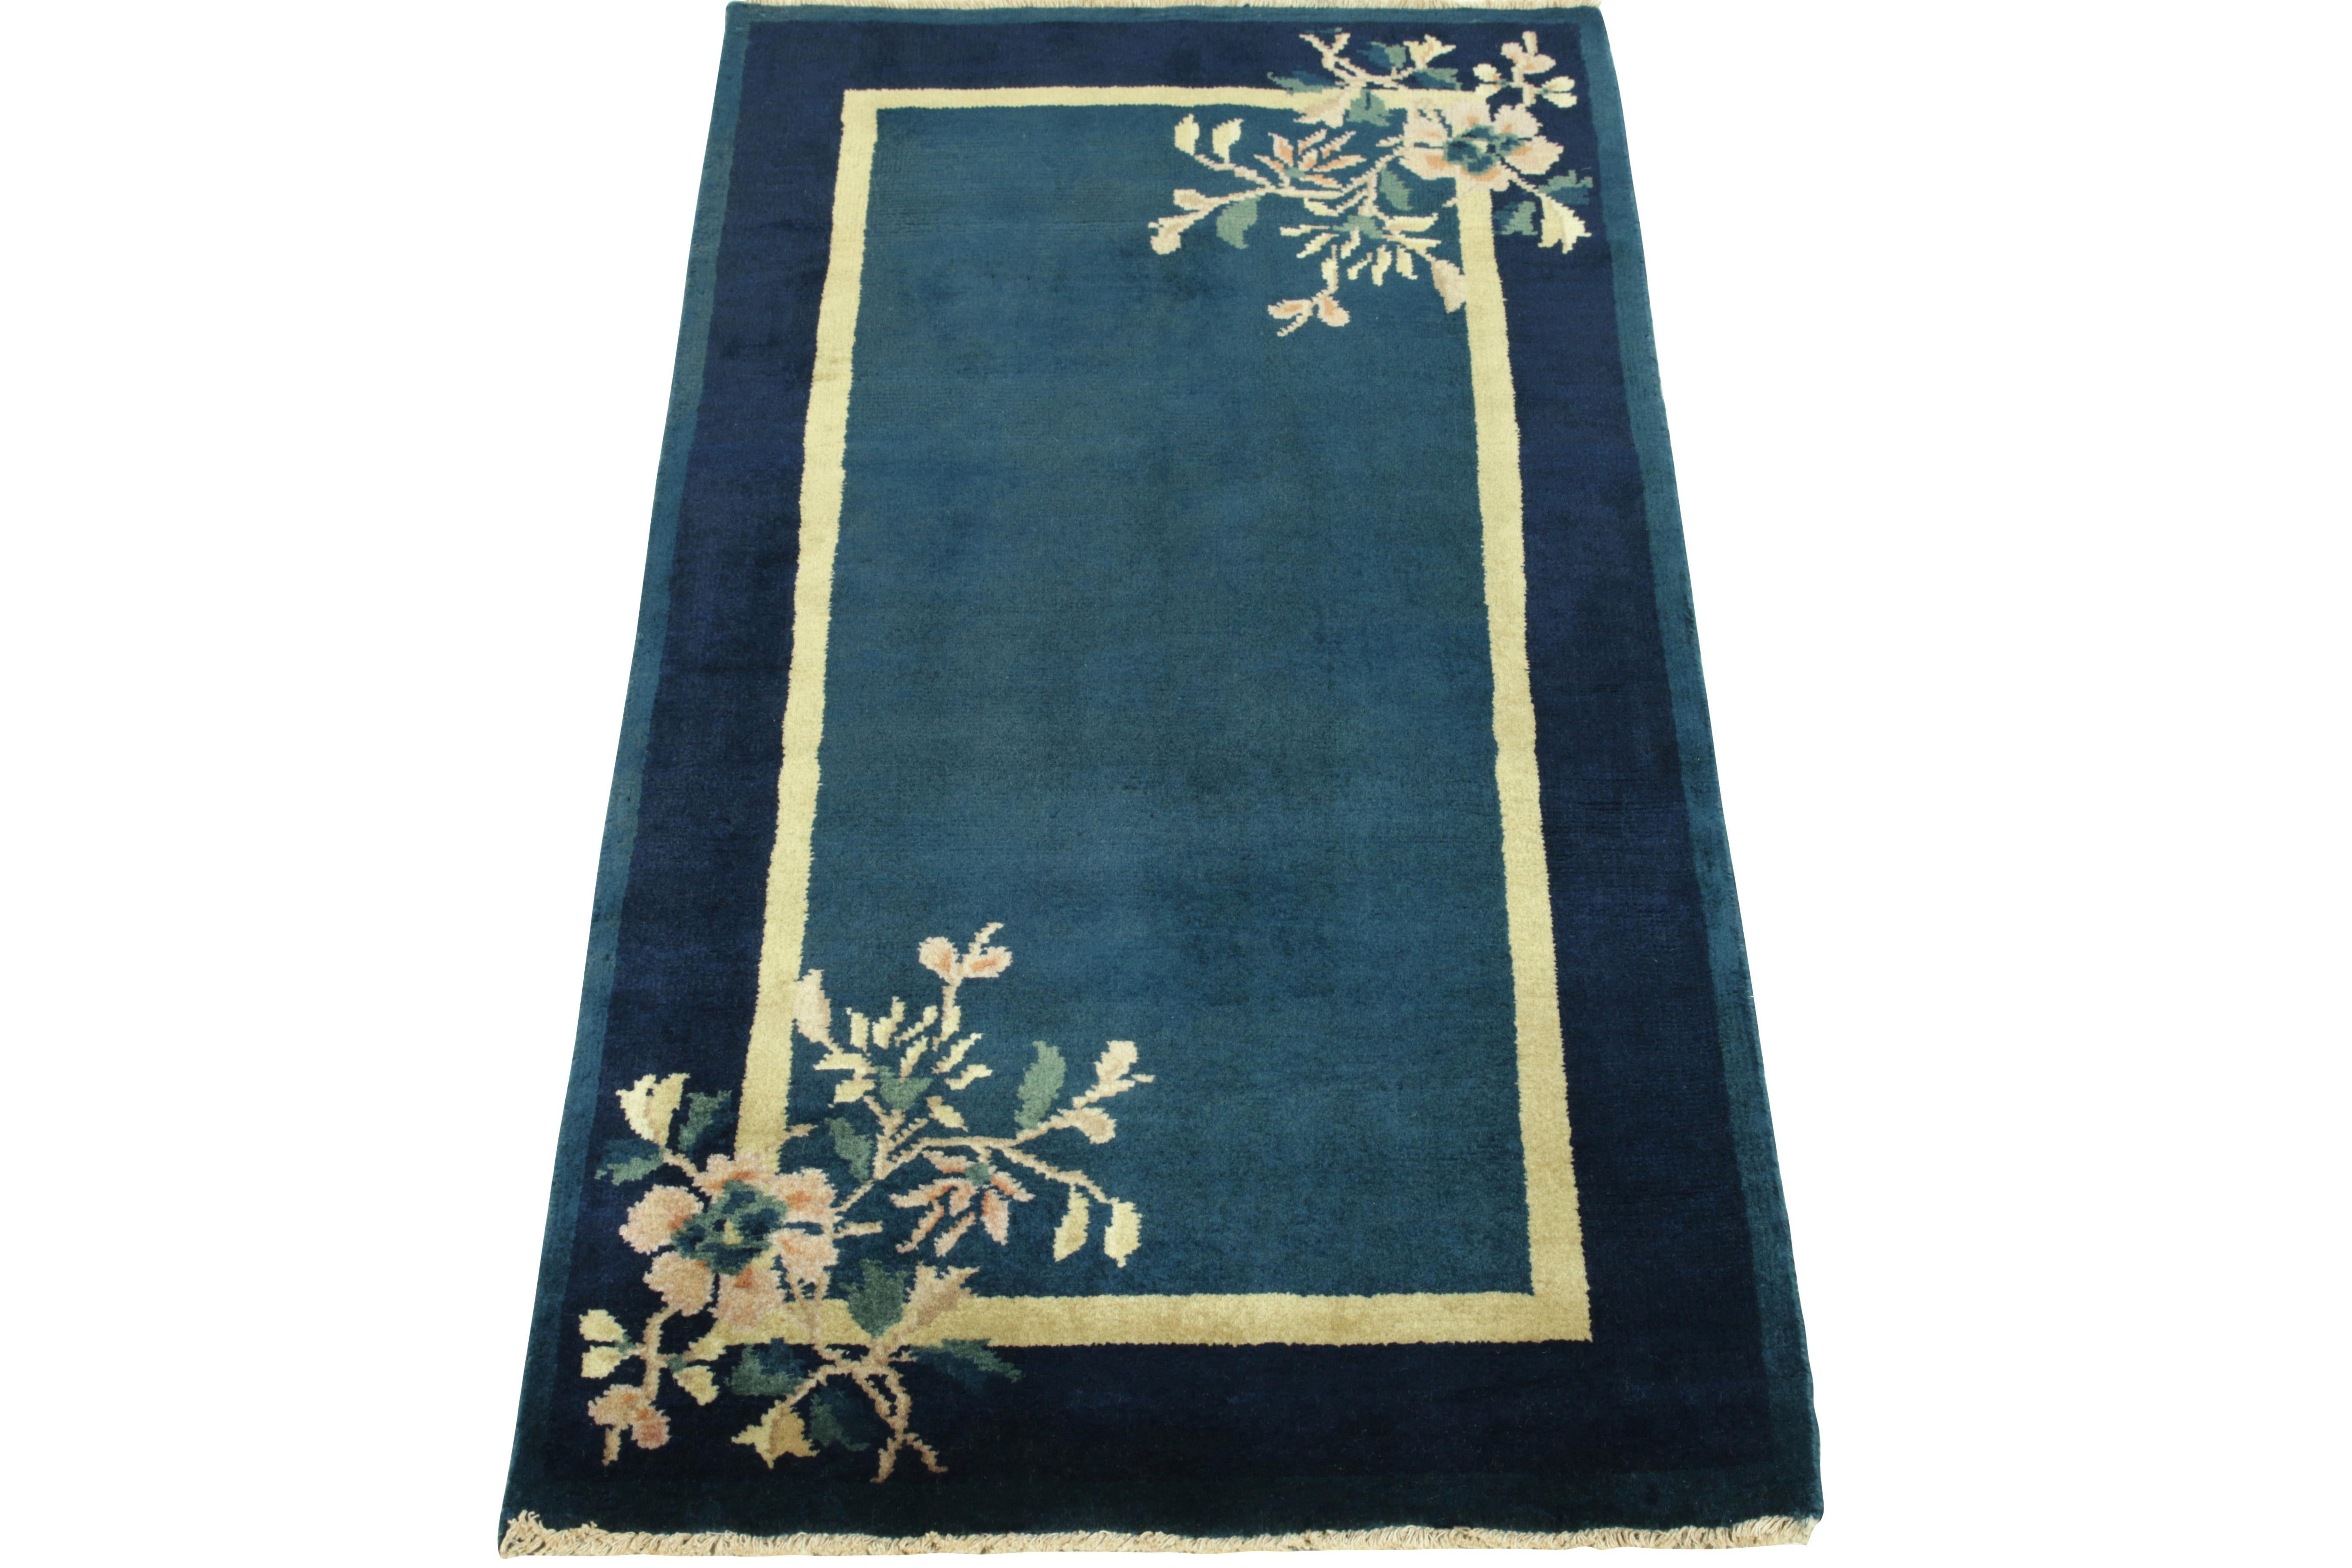 Die äußere Bordüre ist mit blühenden Blumen in Teal-, Lachs- und Pastellgelb-Tönen geschmückt. Der Vintage-Teppich im chinesischen Deco-Stil zeigt helle und dunkle Flecken in Blautönen, die einen sehr klassischen Reiz der 1920er Jahre ausstrahlen.